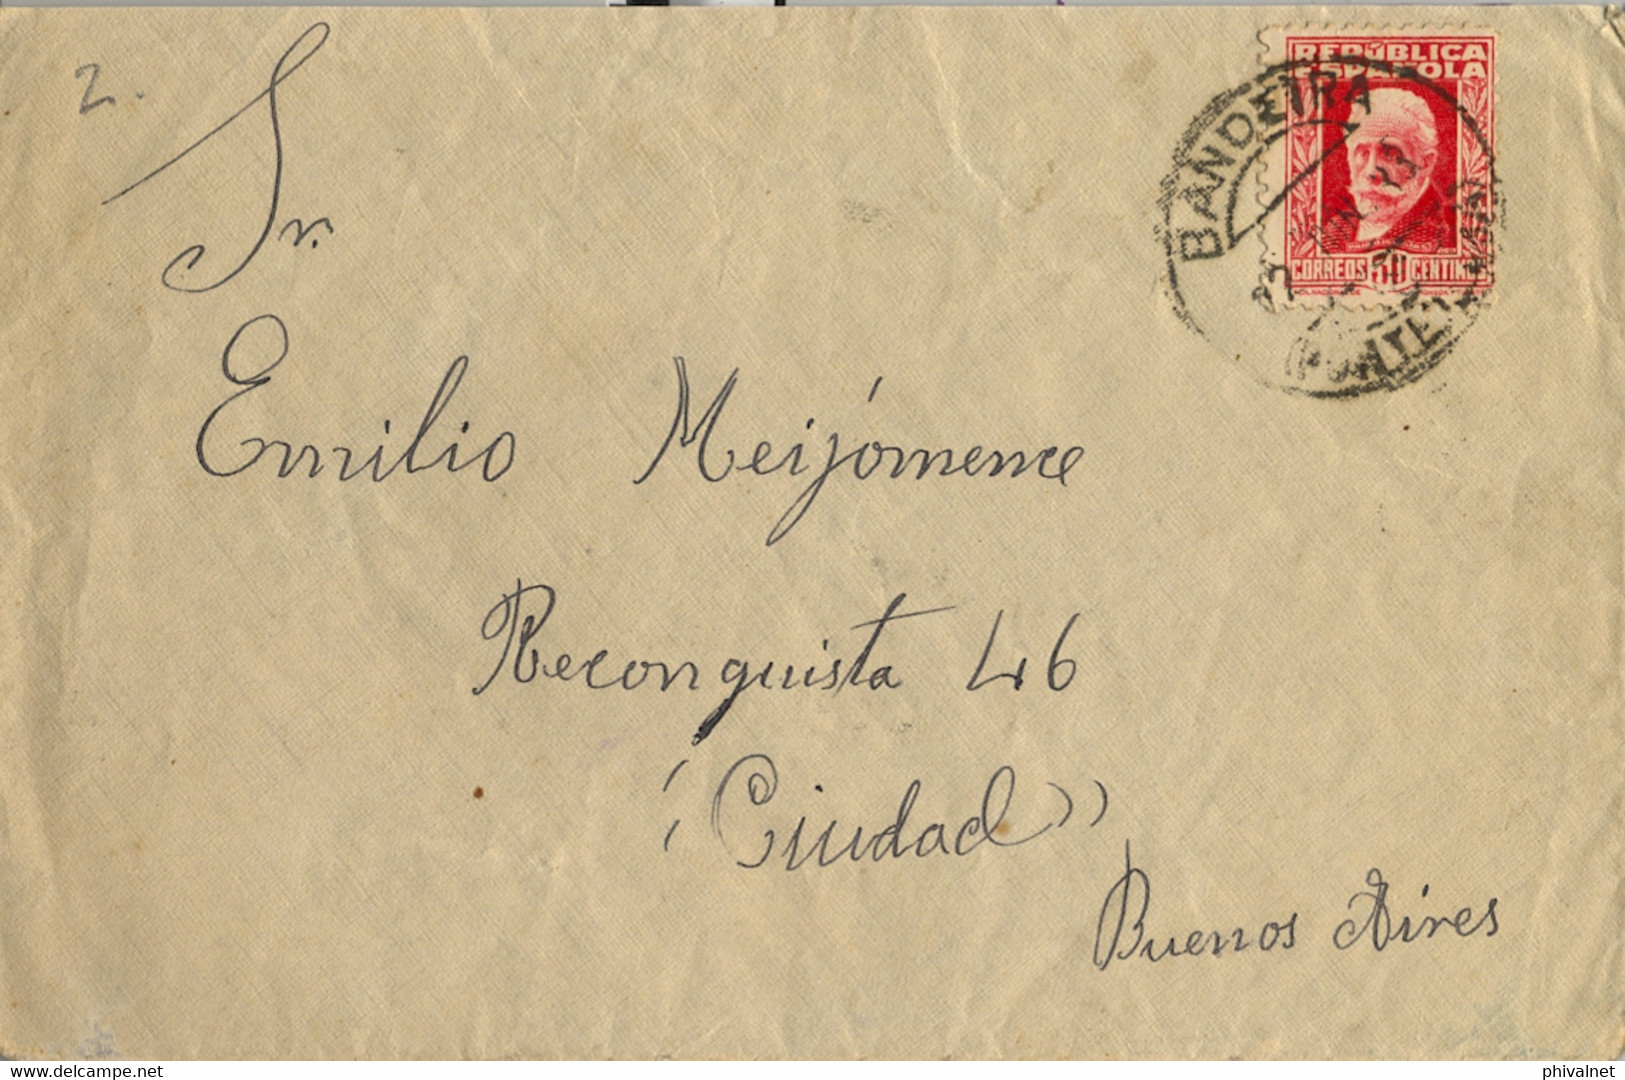 1933 PONTEVEDRA , SOBRE CIRCULADO ENTRE BANDEIRA Y BUENOS AIRES , LLEGADA AL DORSO - Covers & Documents